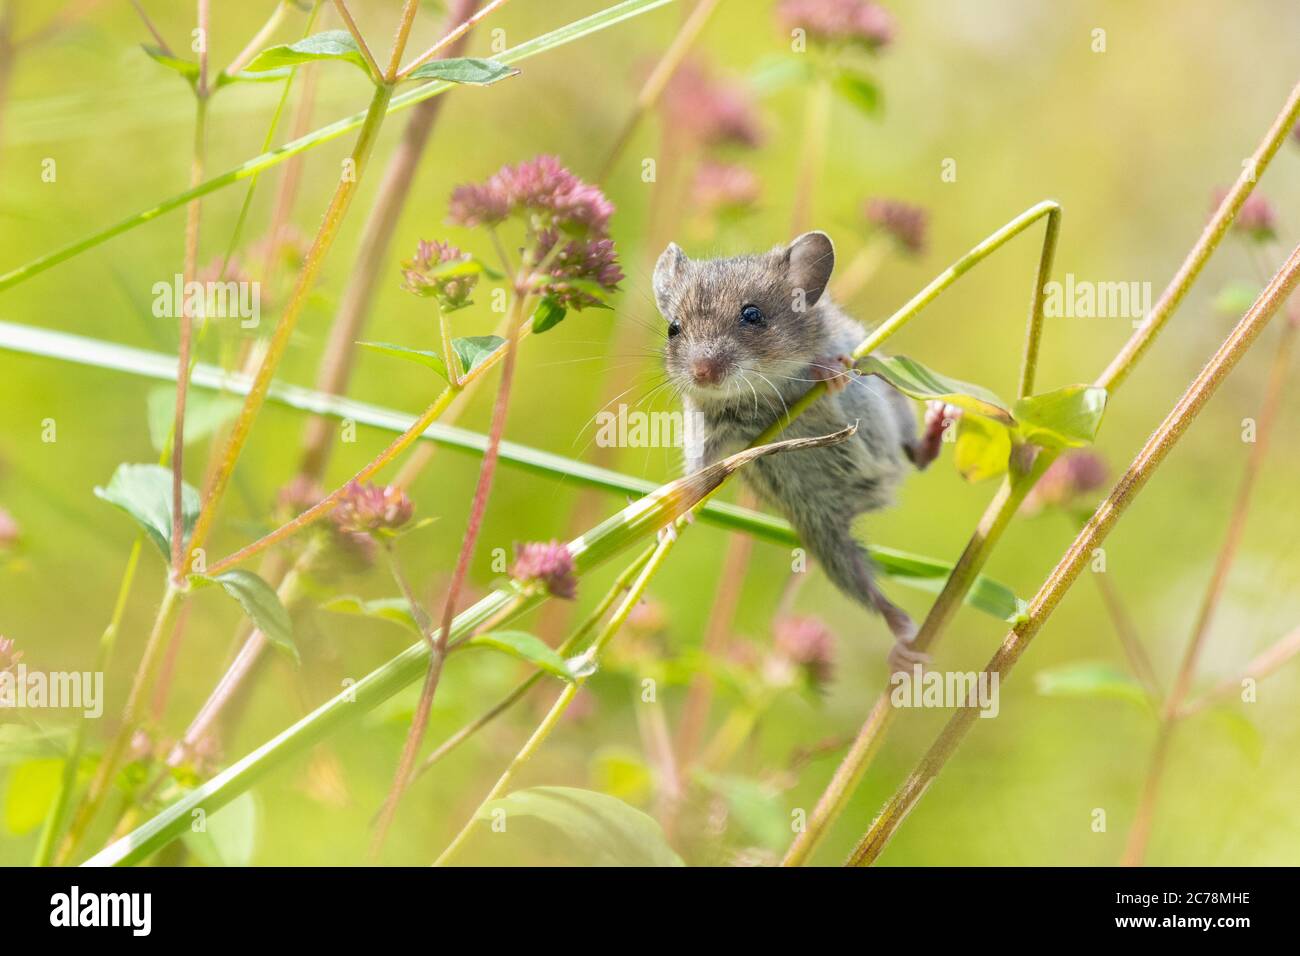 Souris de champ souris de bois Apodemus sylvaticus plante d'escalade tiges dans le jardin du Royaume-Uni collectant les têtes de semis de fleurs Aquilegia - Écosse, Royaume-Uni Banque D'Images